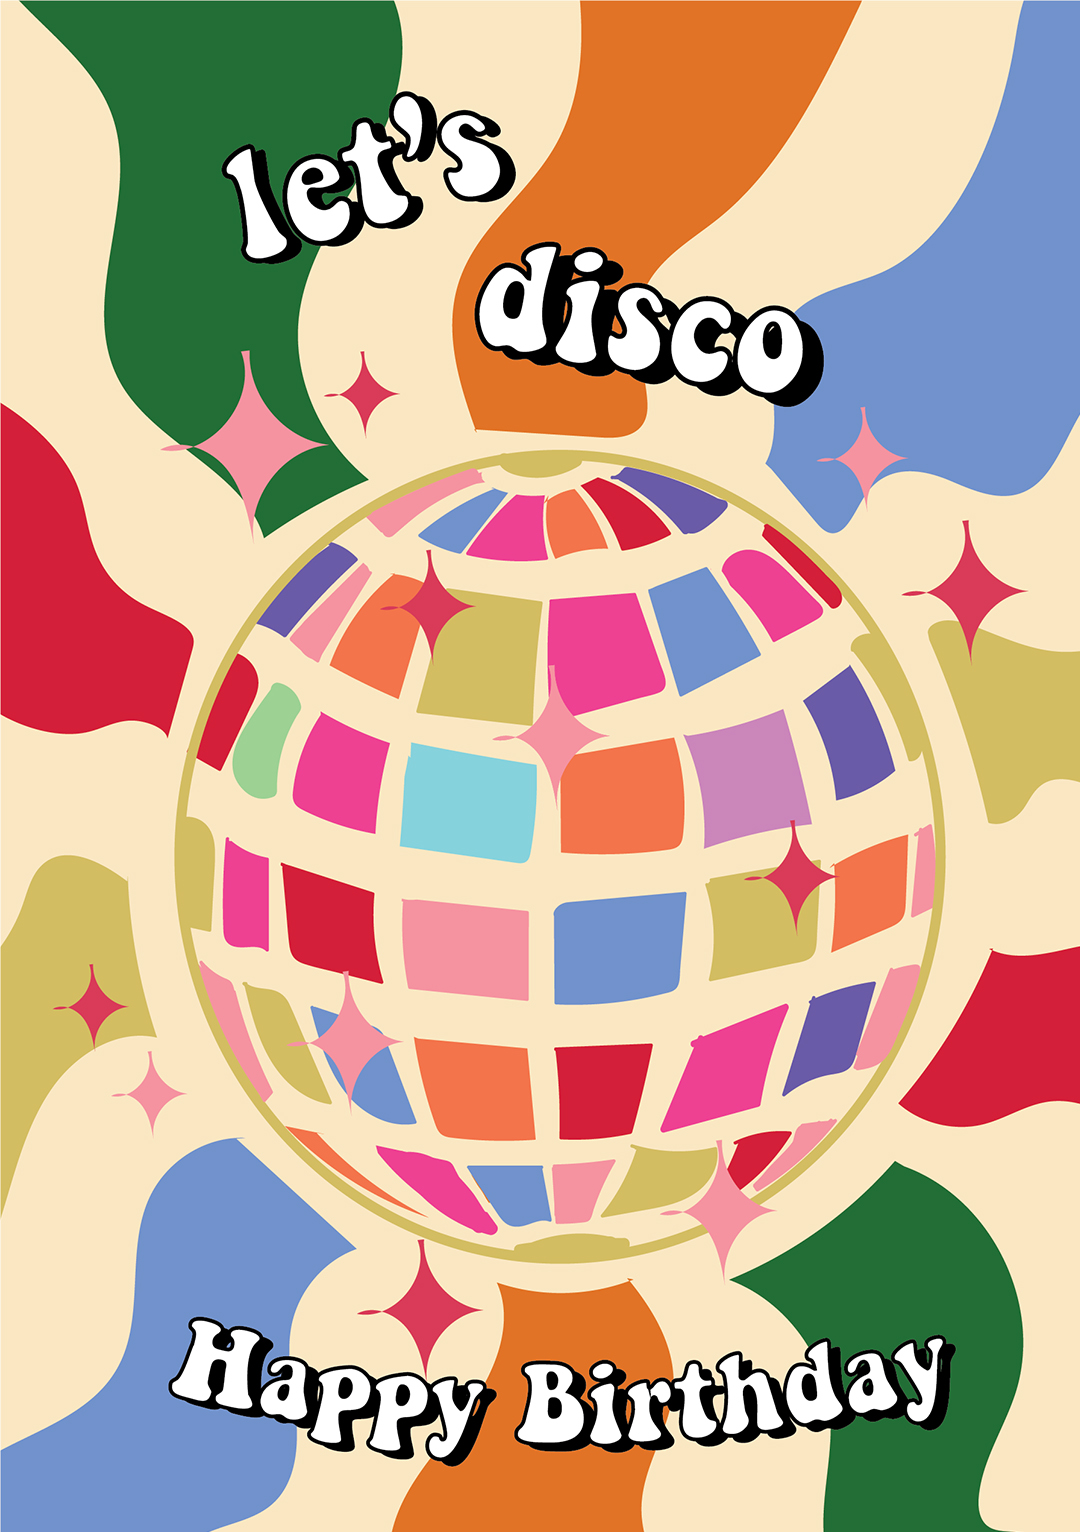 Let's Disco - Happy Birthday